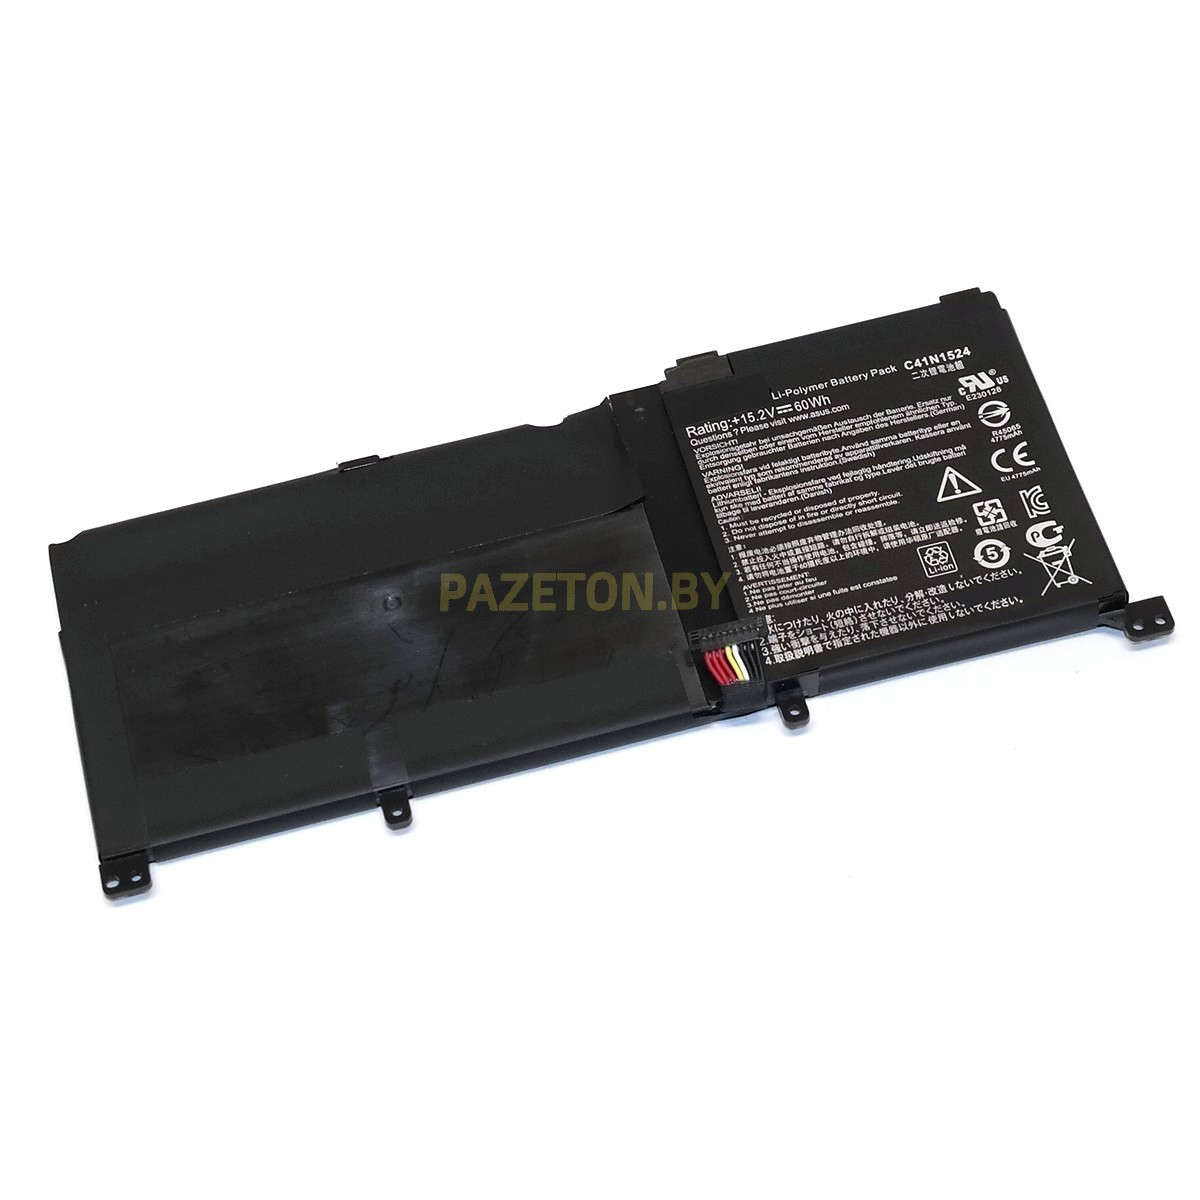 Батарея C41N1524 15,2V 72Wh для Asus Zenbook Pro UX501JW UX501VW N501VW и других моделей ноутбуков